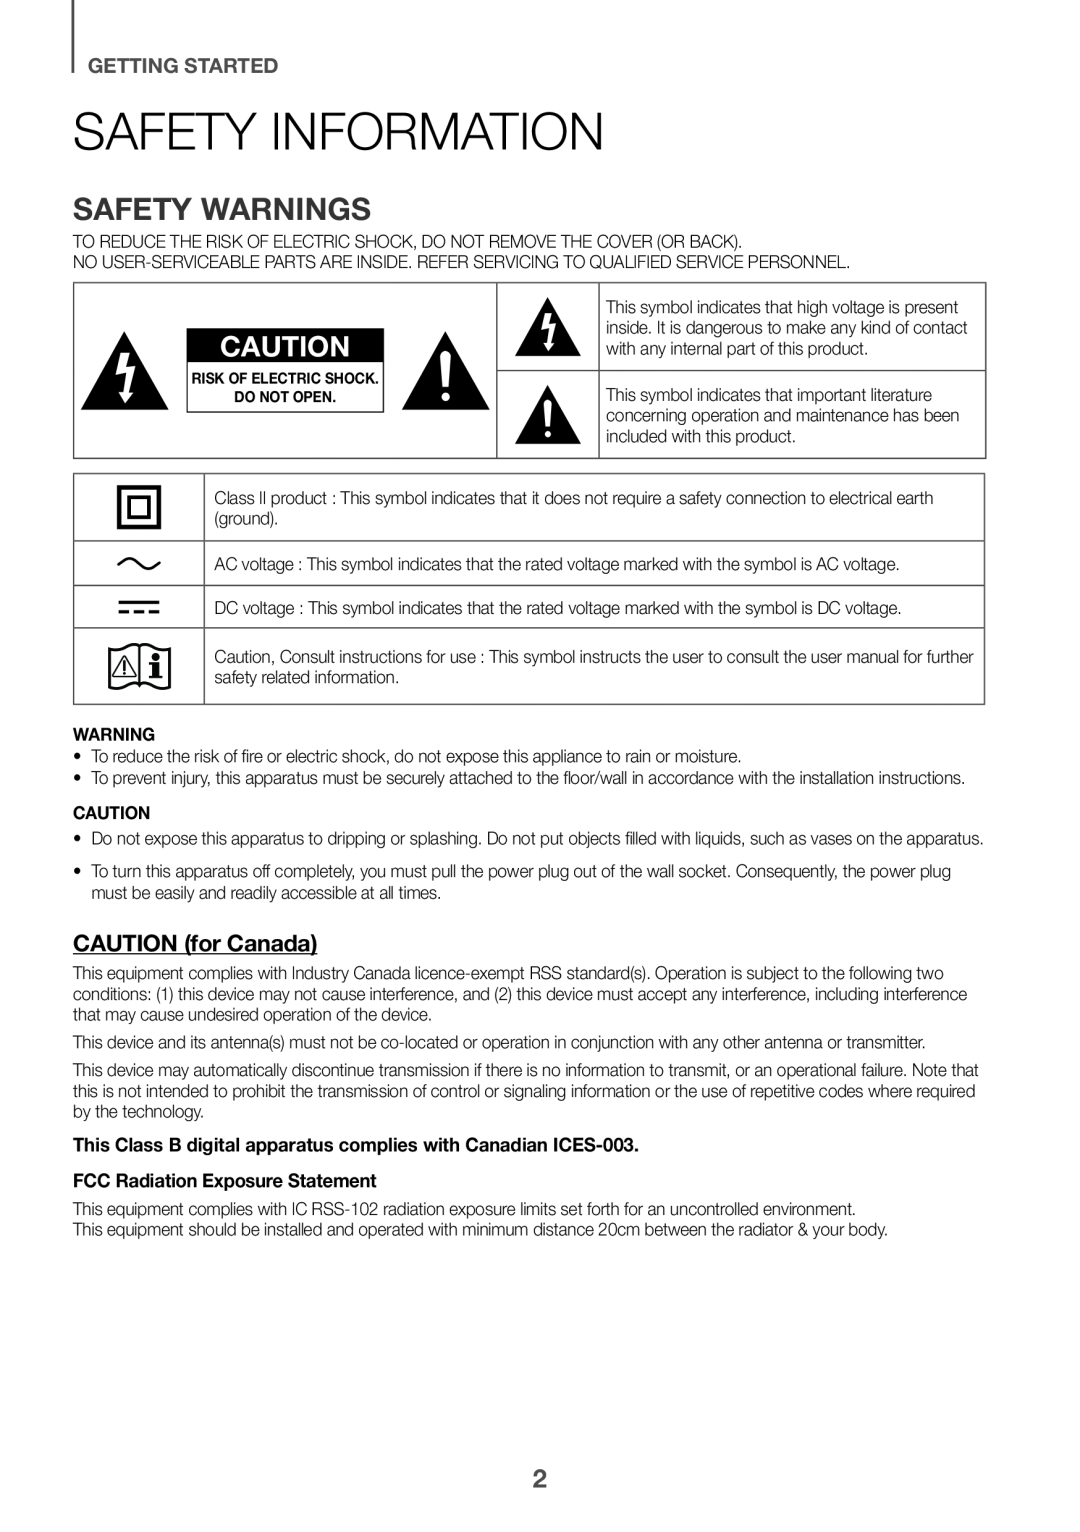 Safety Information Standard HW-K550